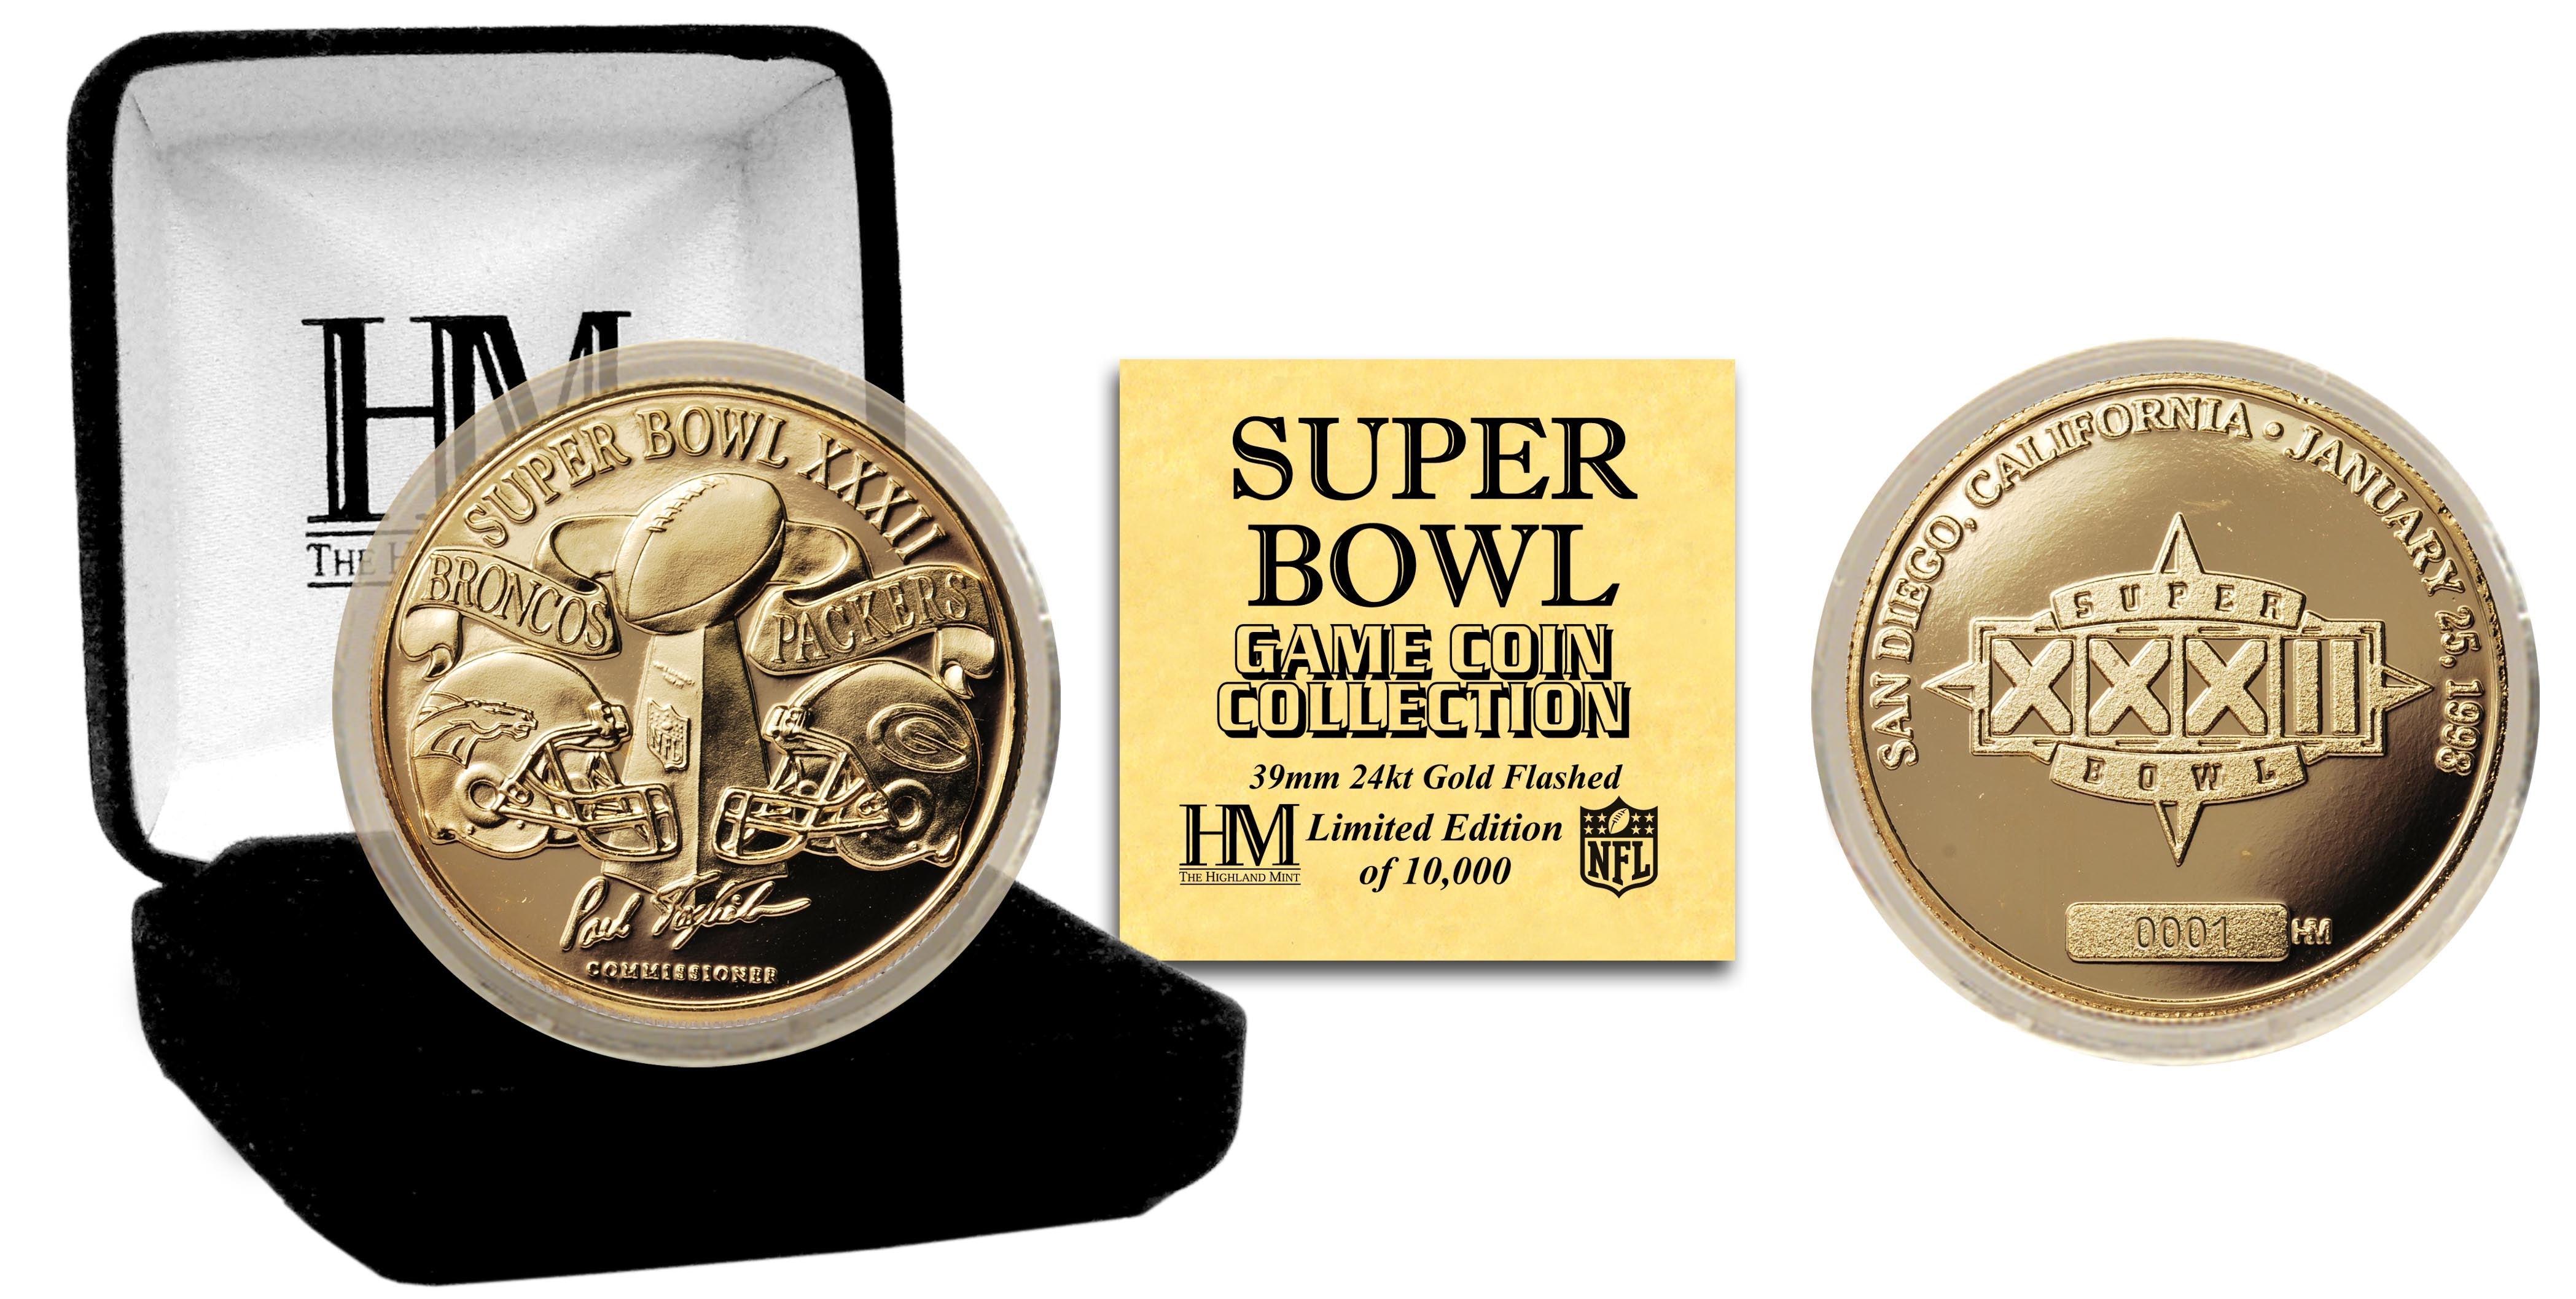 Super Bowl XXXII 24kt Gold Flip Coin